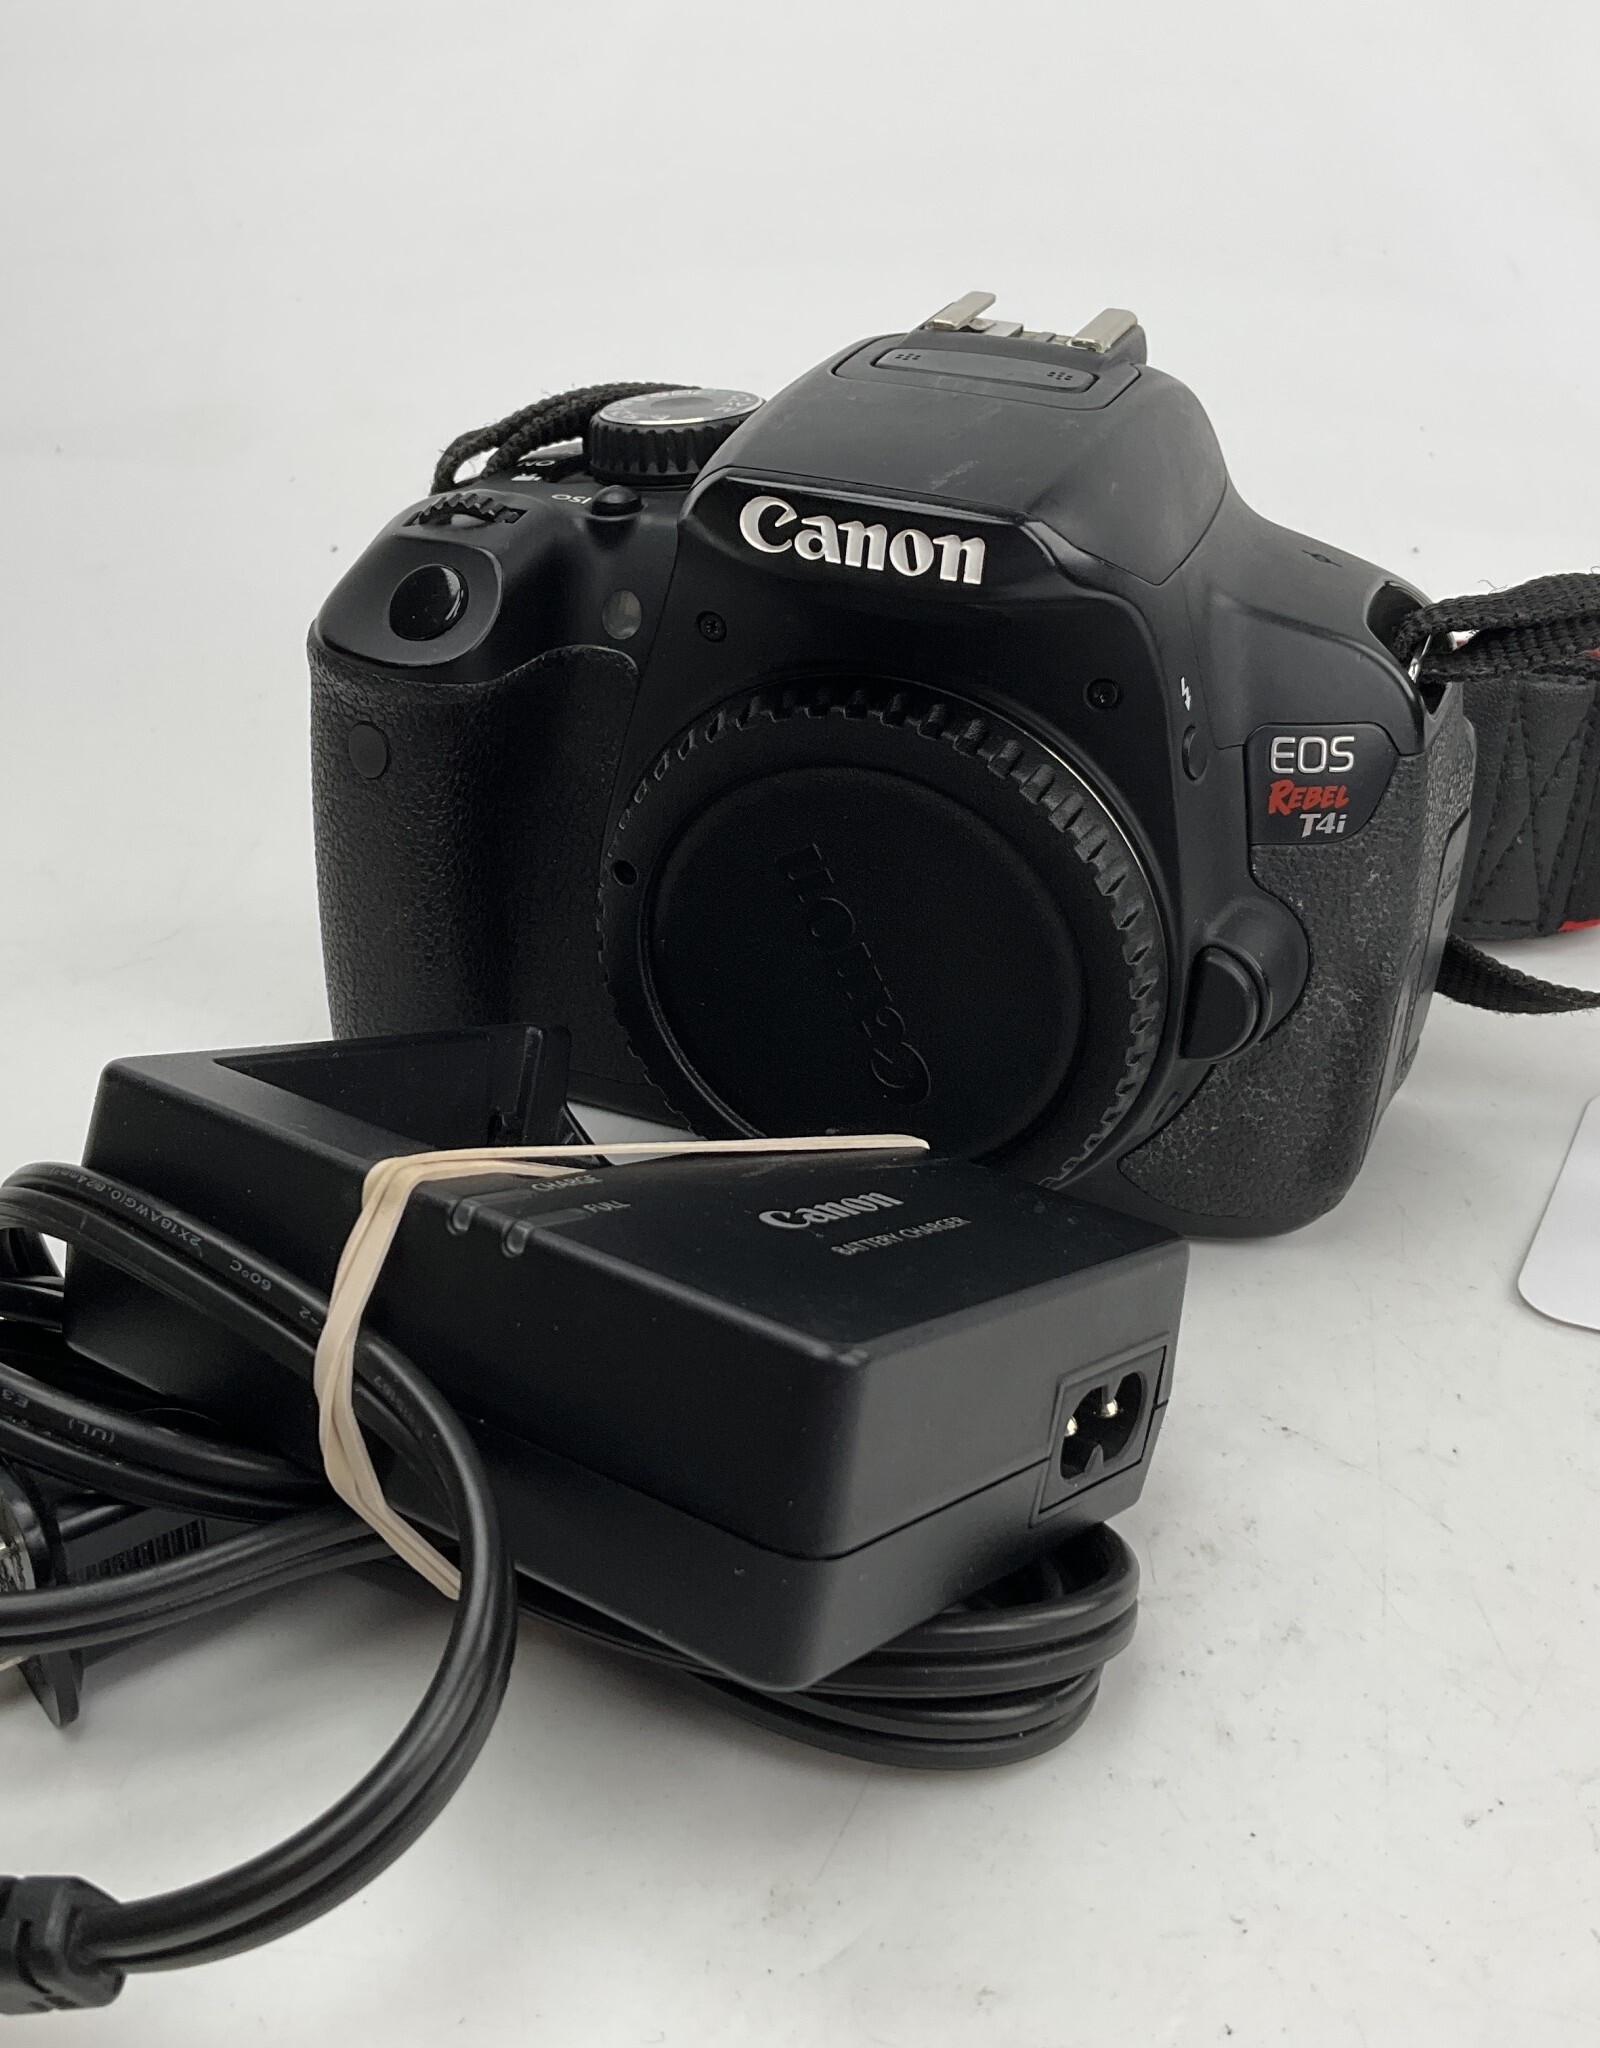 CANON Canon Rebel T4i Camera Body Used Fair